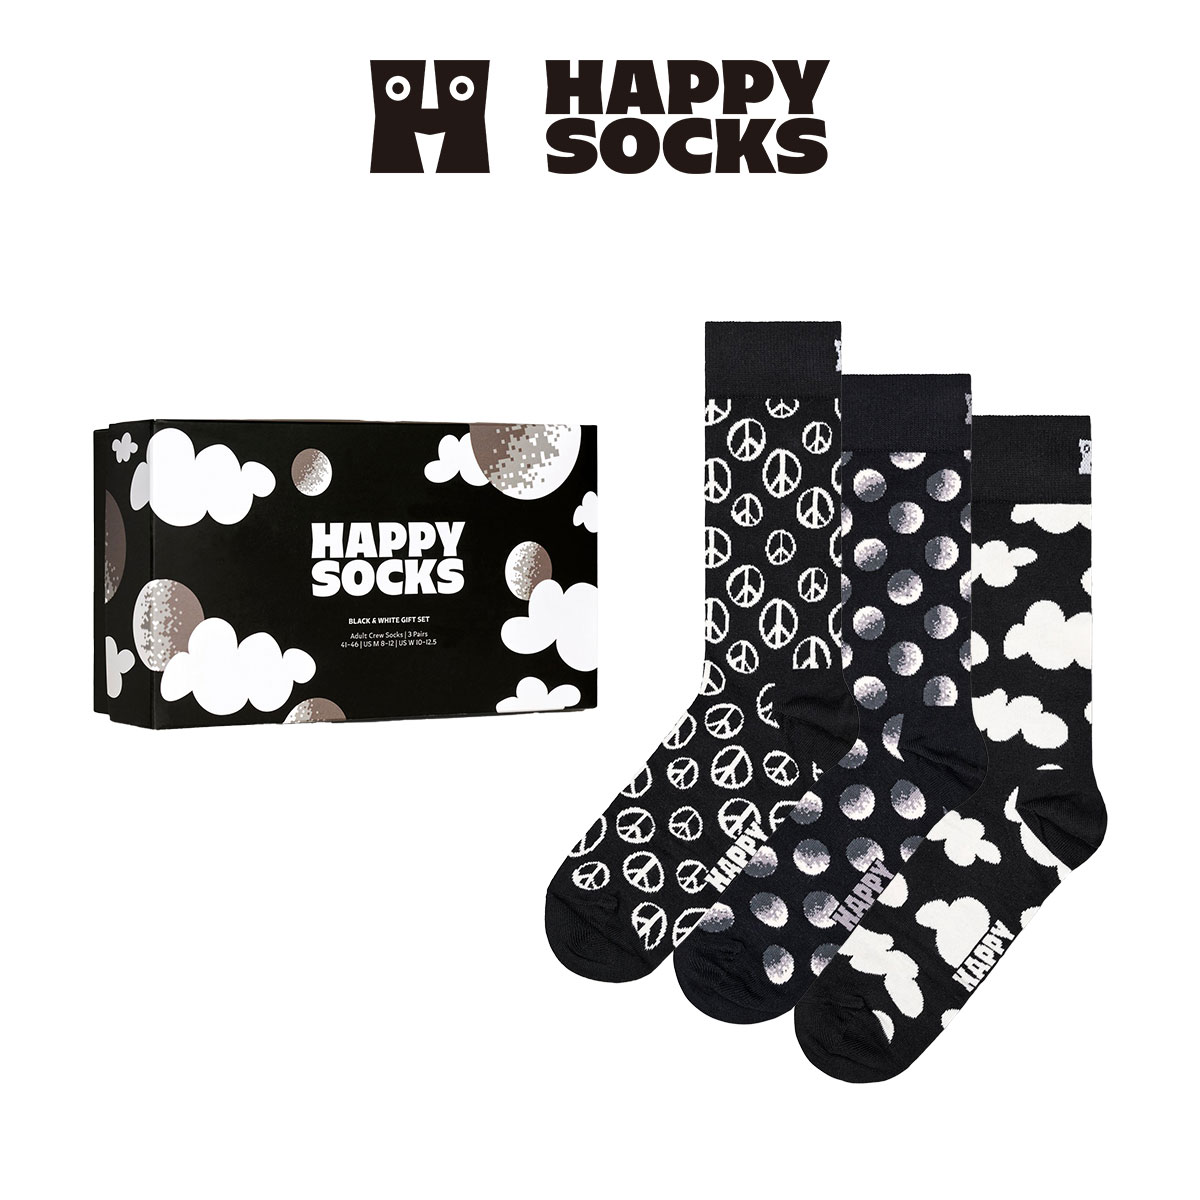 【3足セット】Happy Socks ハッピーソックス Black & White ( ブラック アンド ホワイト ) 3-Pack Gift Set GIFT BOX 3足組 クルー丈 ソックス ユニセックス メンズ ＆ レディース